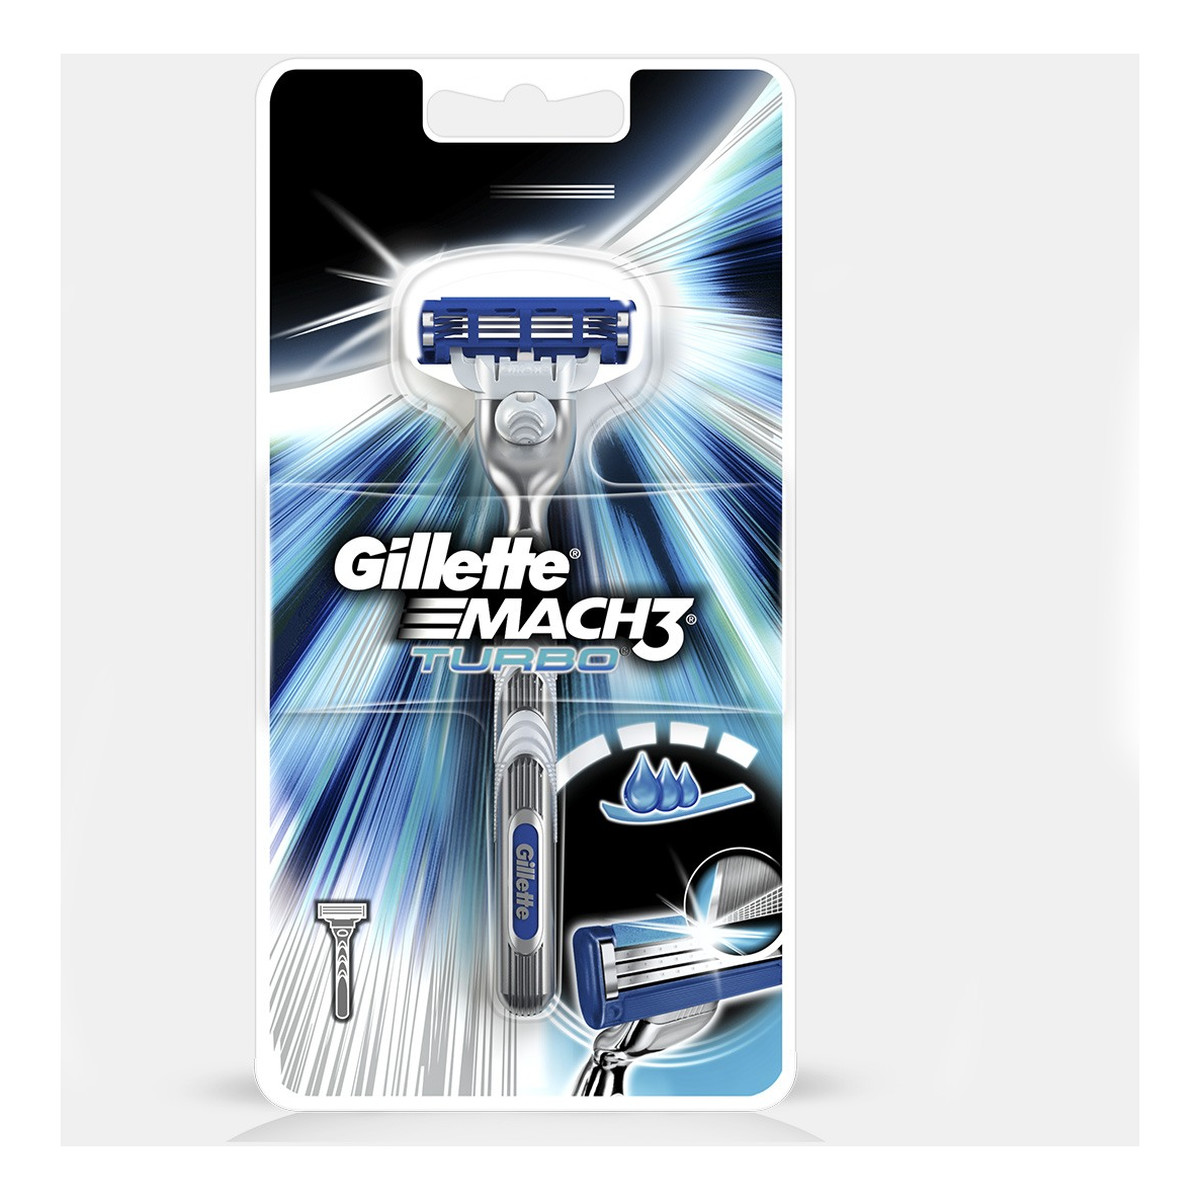 Gillette Gillette Mach 3 Turbo Maszynka do golenia + 4 wkłady